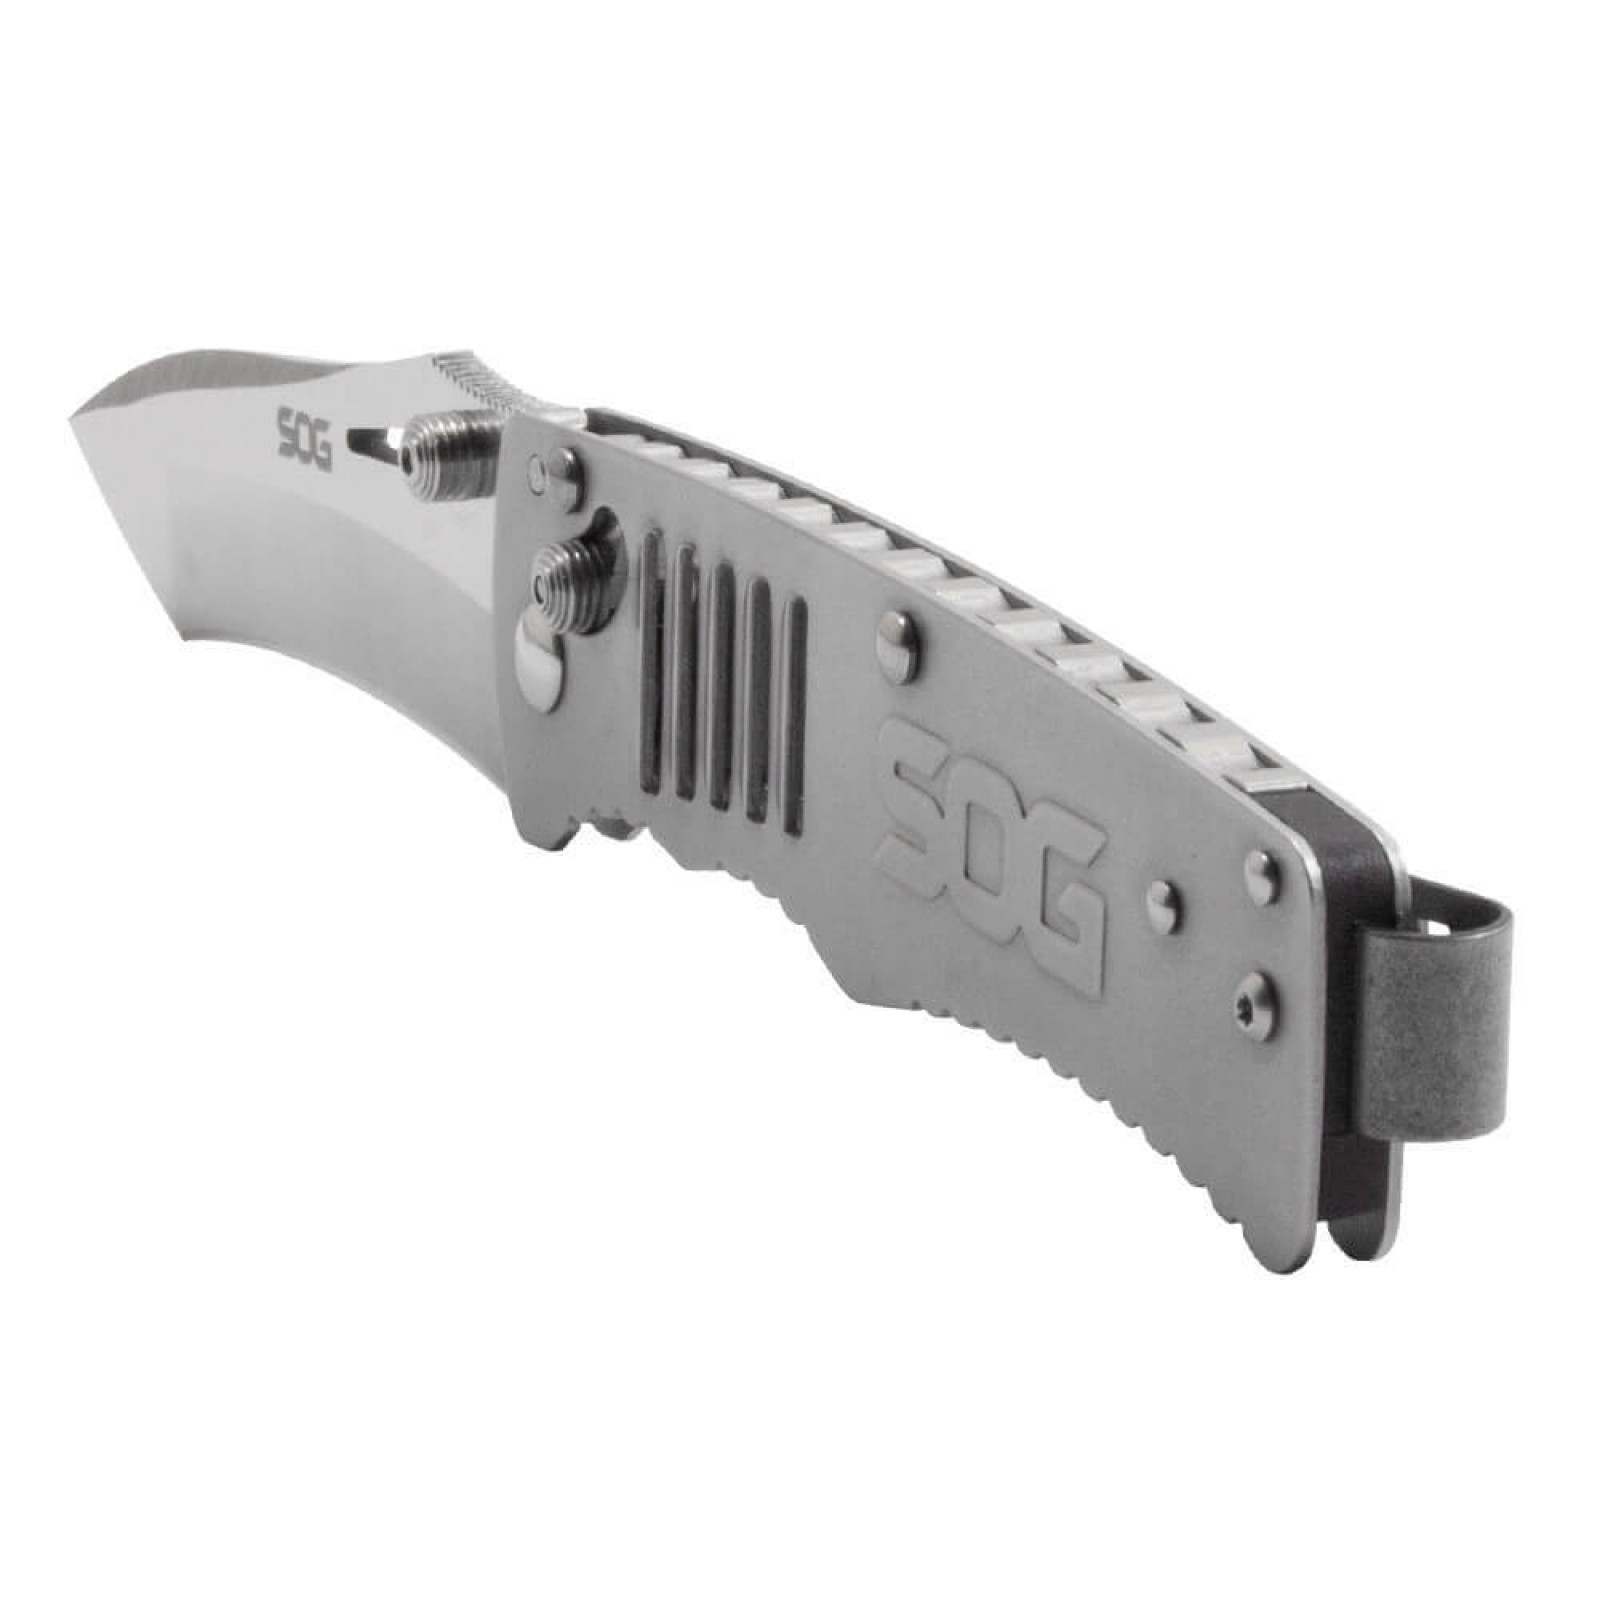 Складной нож Targa Satin - SOG TG1001, сталь VG-10, рукоять нержавеющая сталь, серый - фото 6